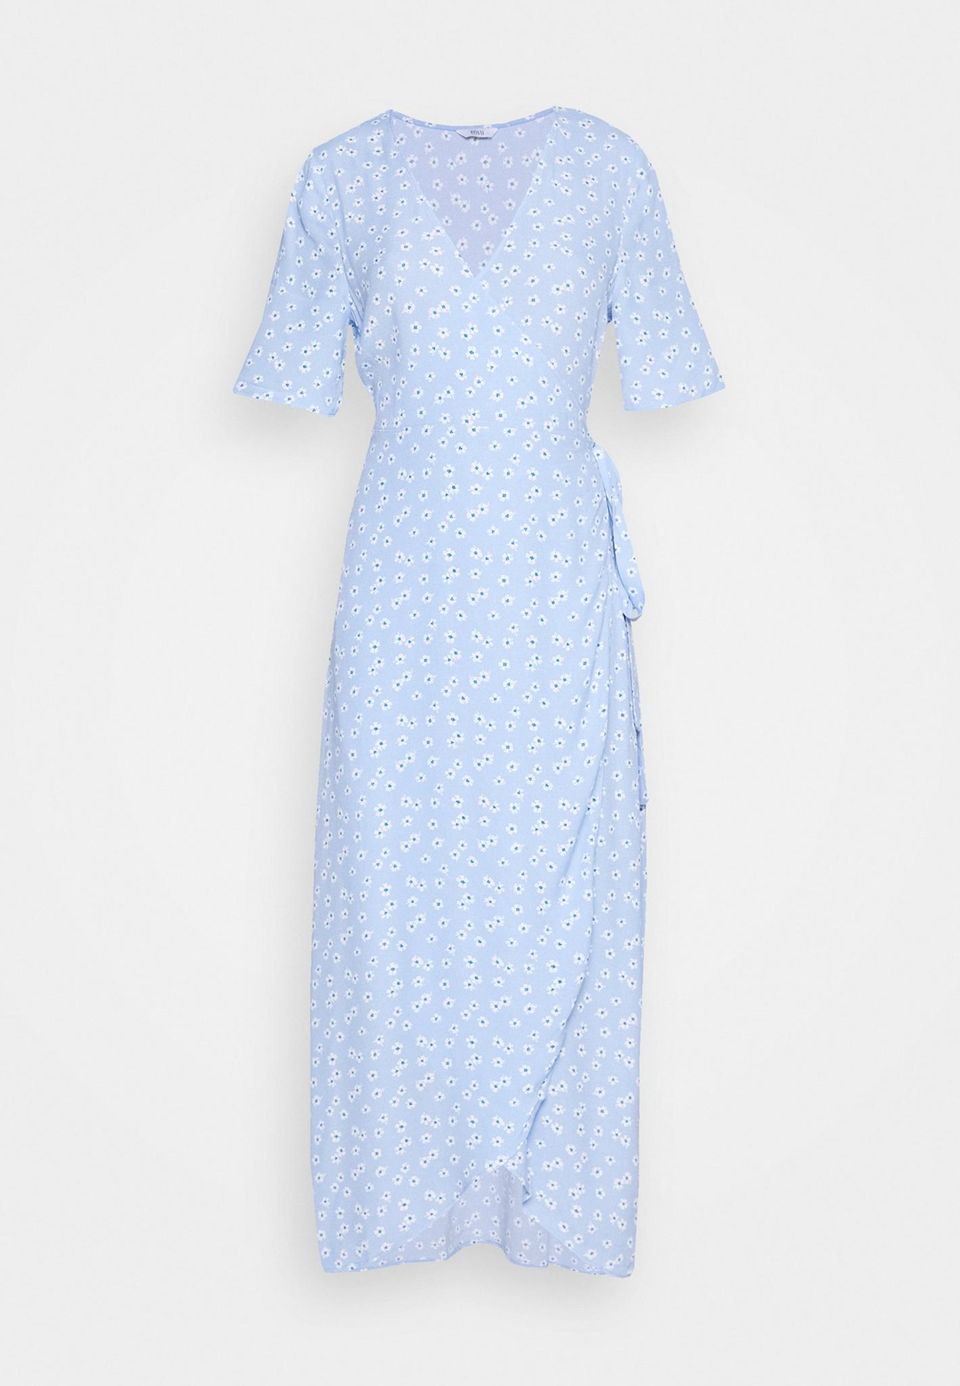 Wer ebenfalls zarte Farben mag, aber lieber zu Blau greift, wird dieses Kleid lieben. Es besteht aus mindestens 50% Eco-Material. Von Envii, kostet ca. 75 Euro.